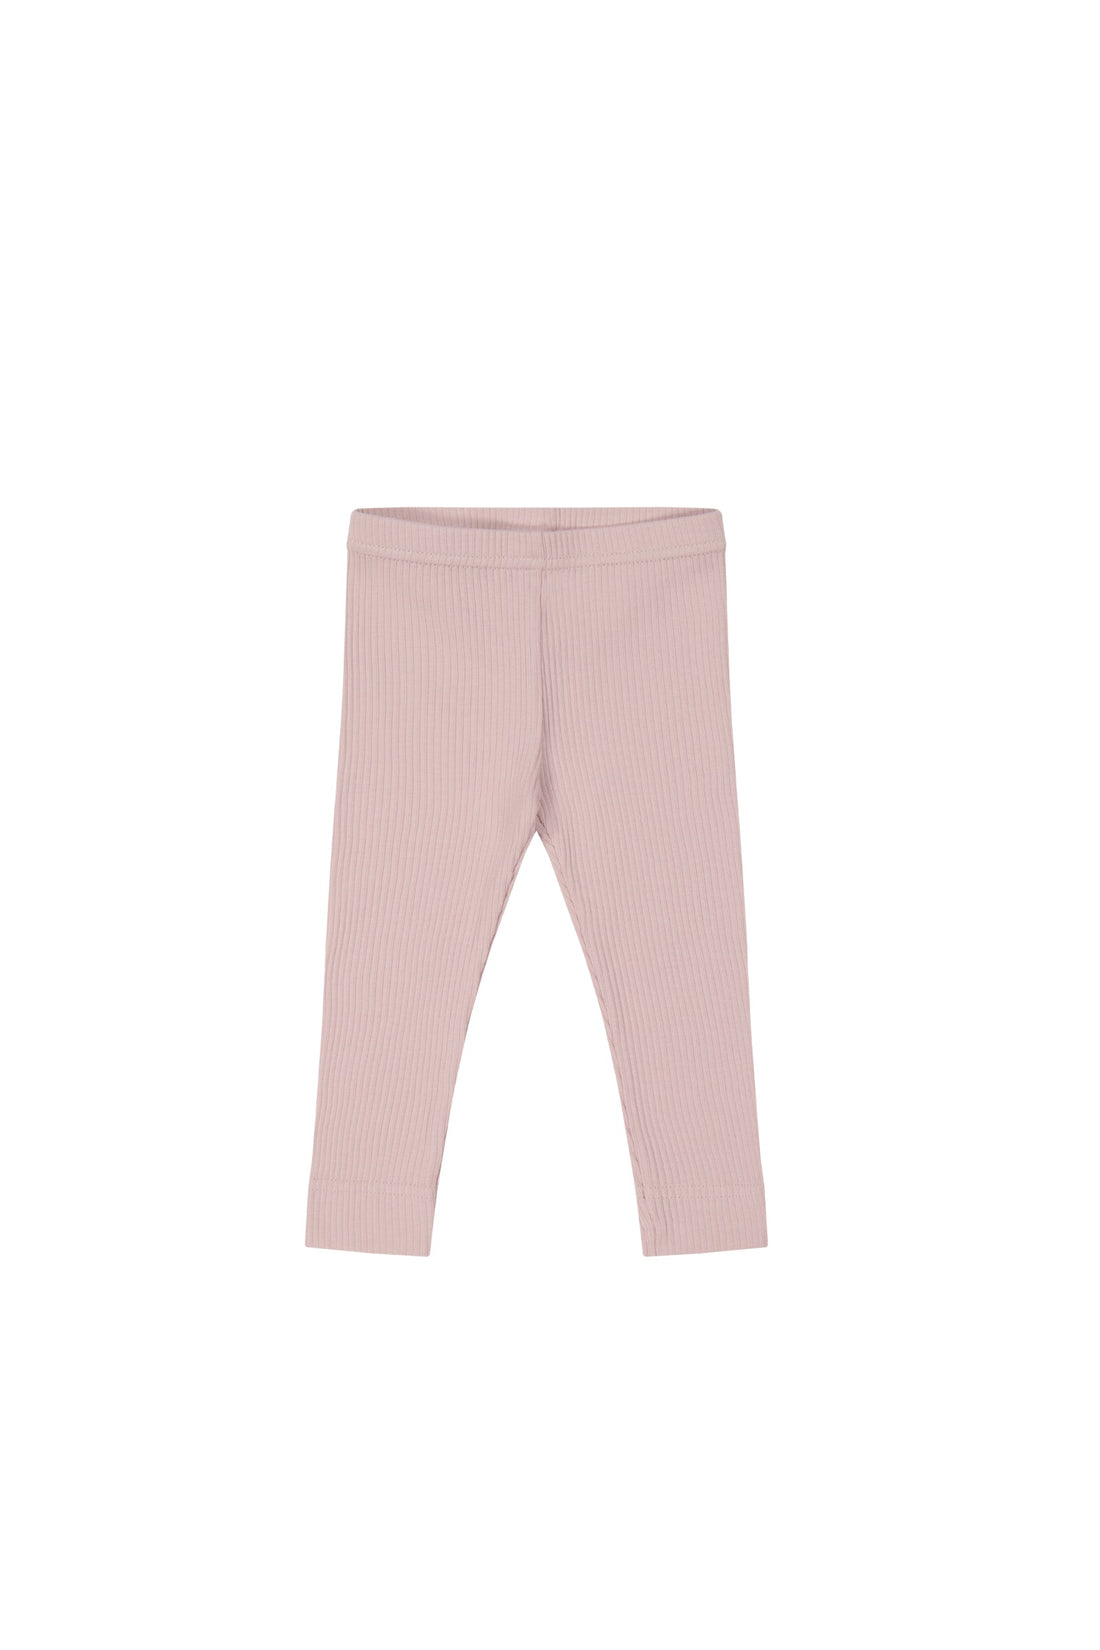 Jamie Kay Organic Cotton Modal Elastane Leggings in Powder Pink